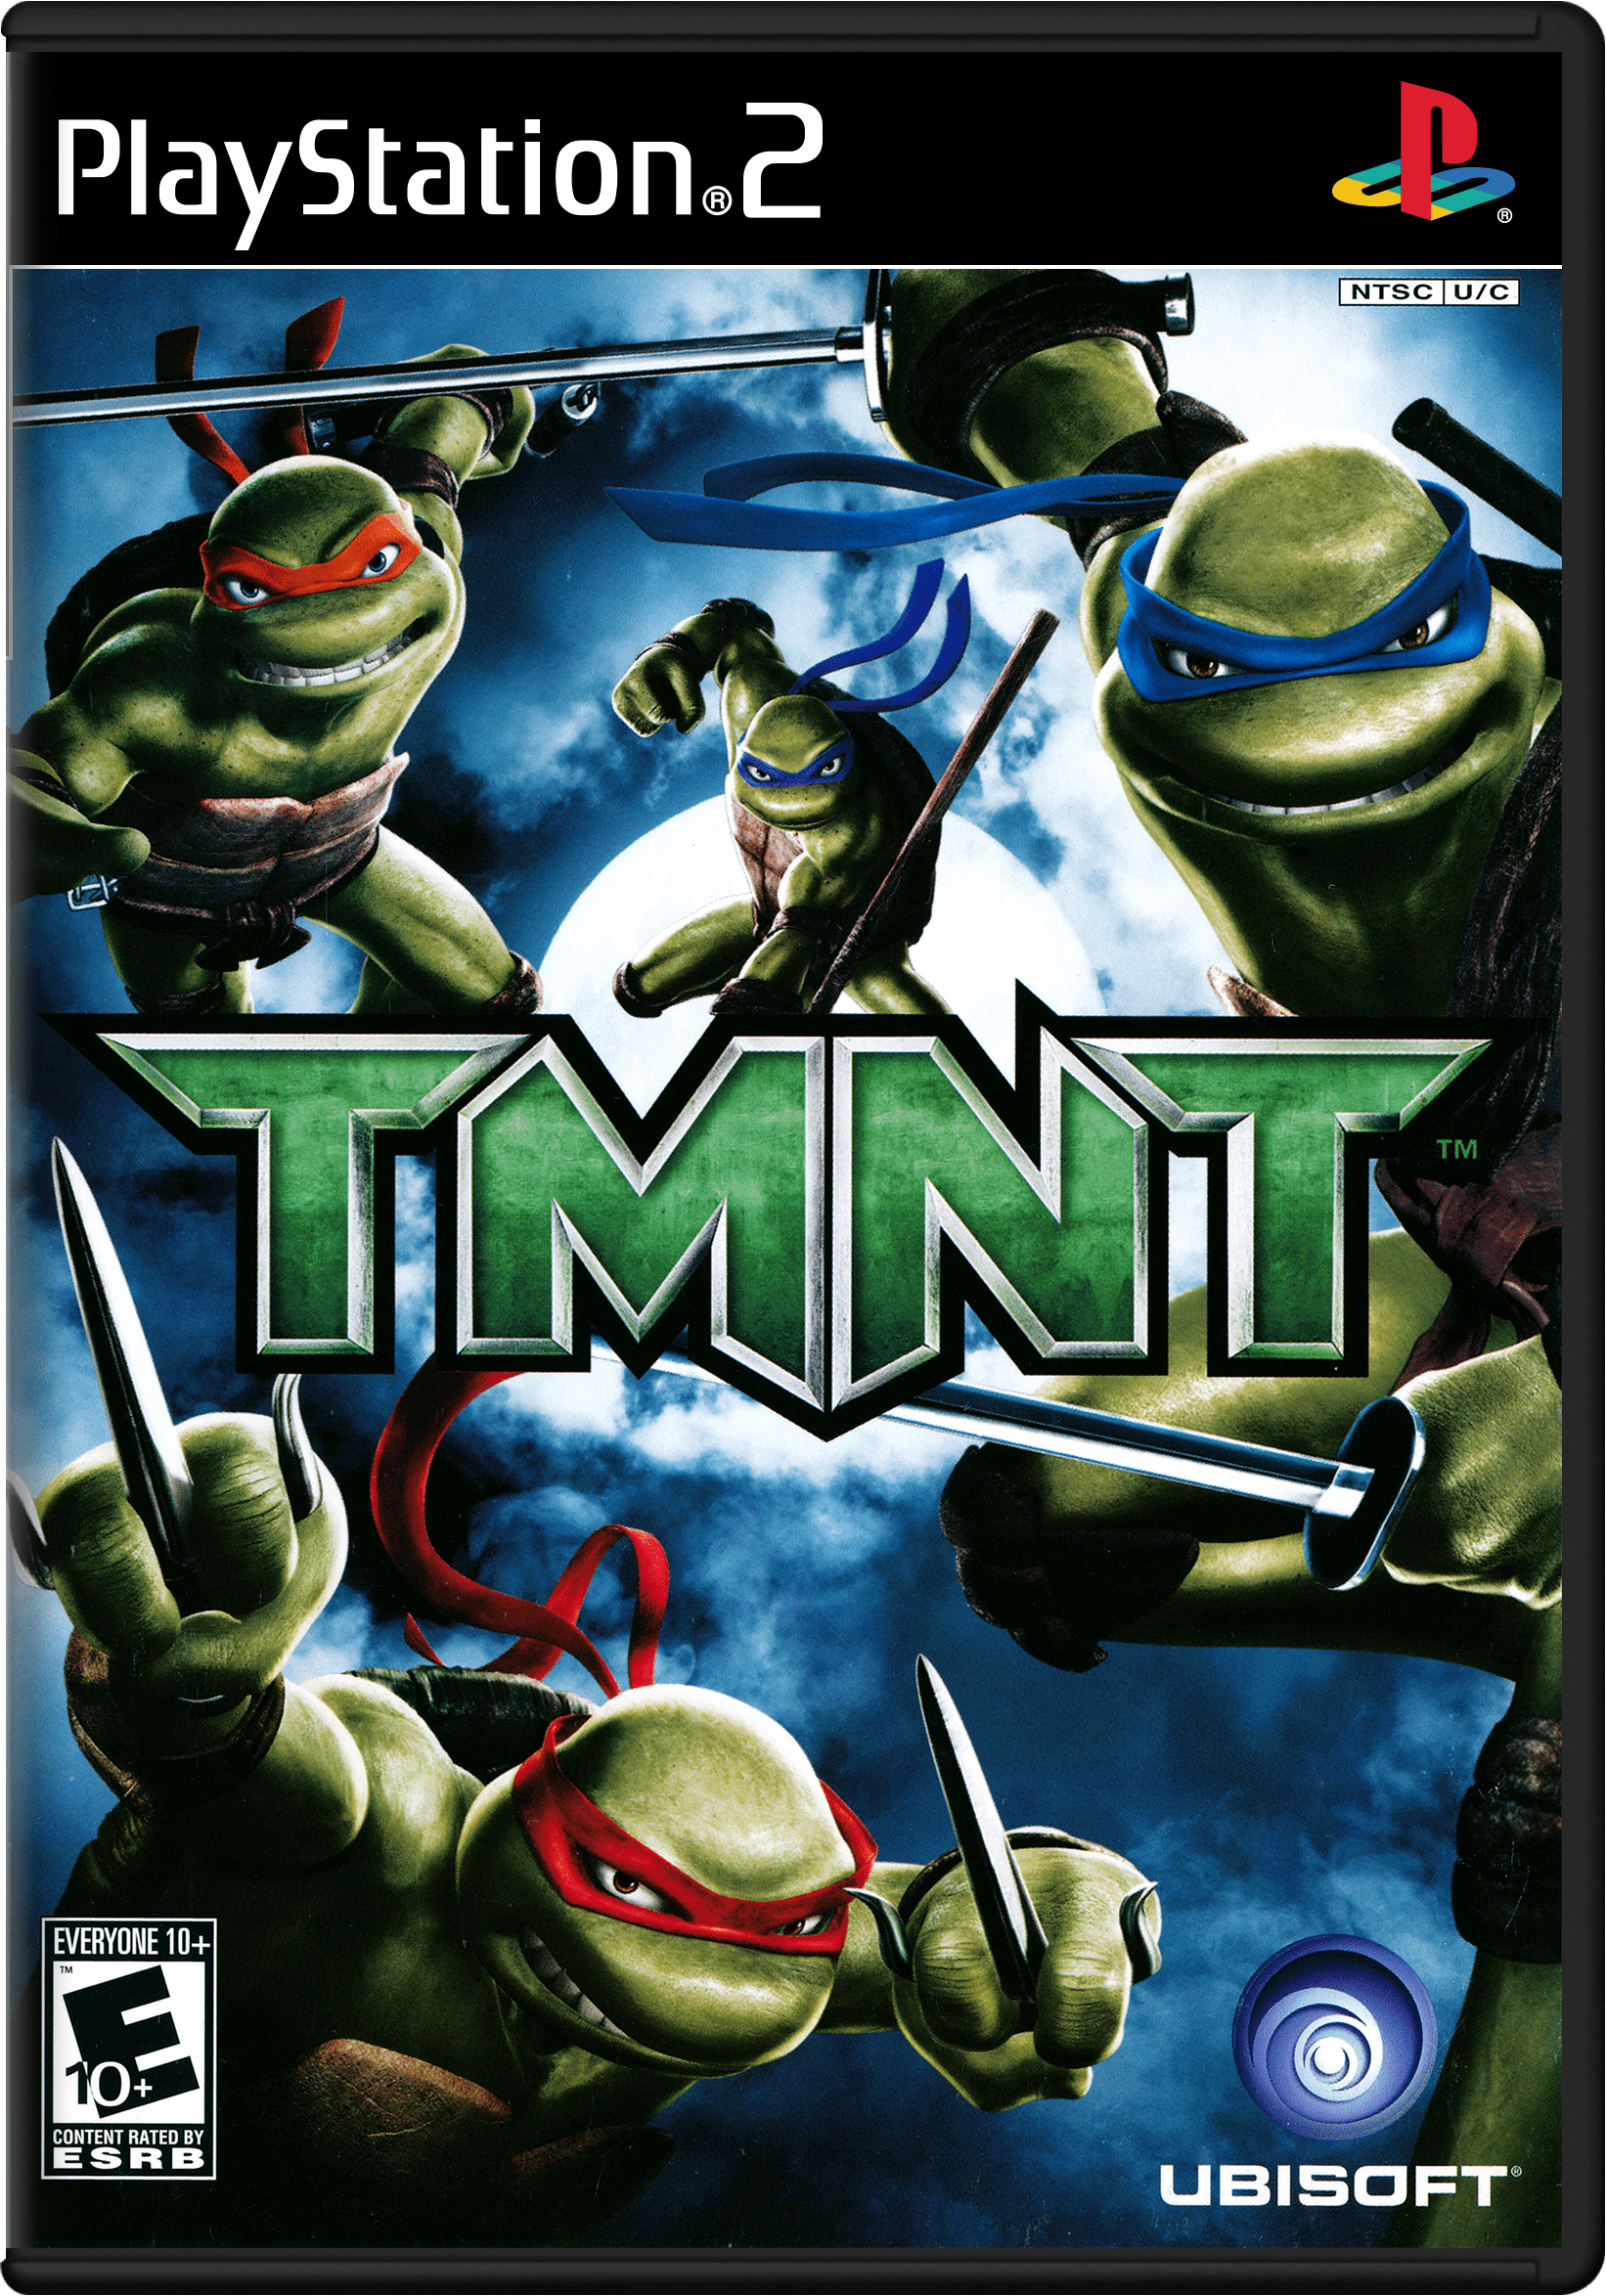 Teenage Mutant Ninja Turtles ps2. PLAYSTATION 2 Черепашки ниндзя. Teenage Mutant Ninja Turtles 2 ps2. TMNT 2007 ps2.